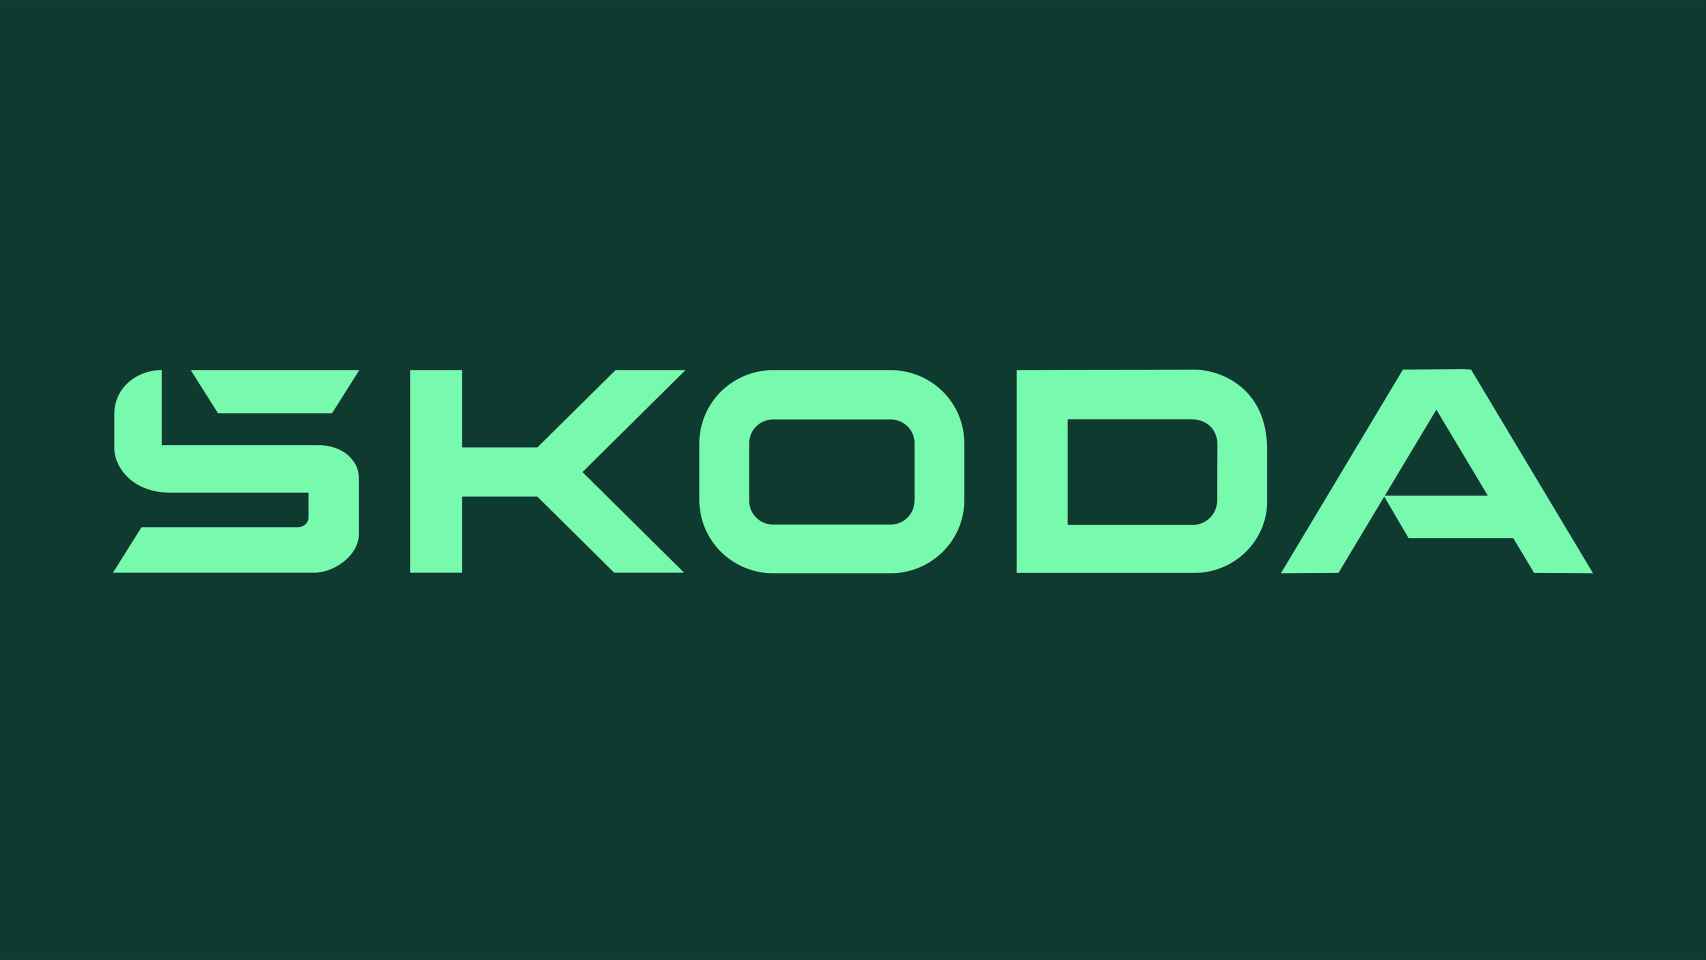 La marca denominativa Skoda se basa en la simetría y en las formas redondas con bordes.